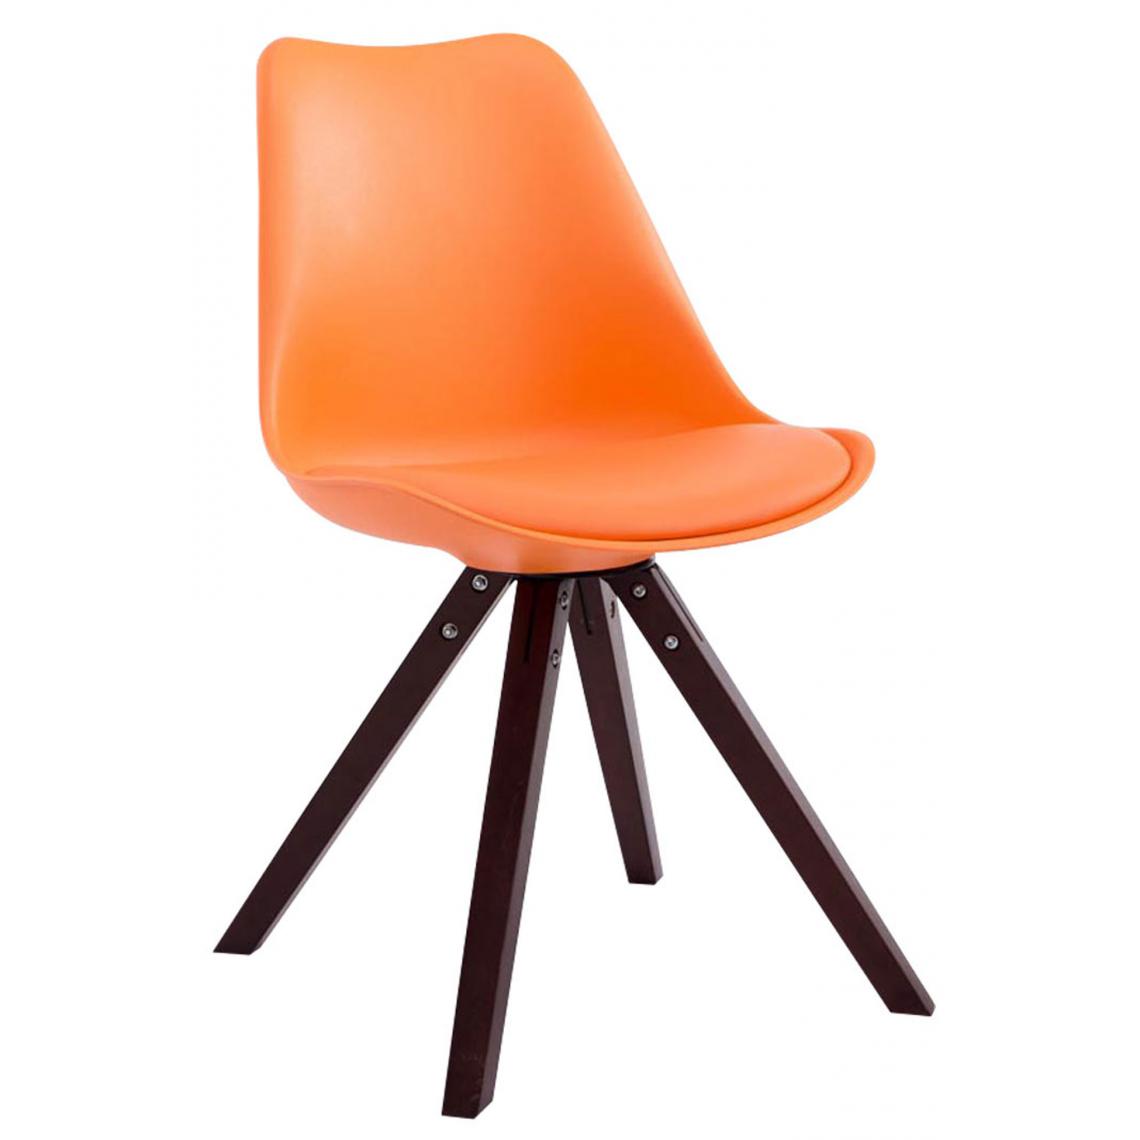 Icaverne - Splendide Chaise visiteur categorie Katmandou cuir synthétique carré cappuccino (chêne) couleur Orange - Chaises